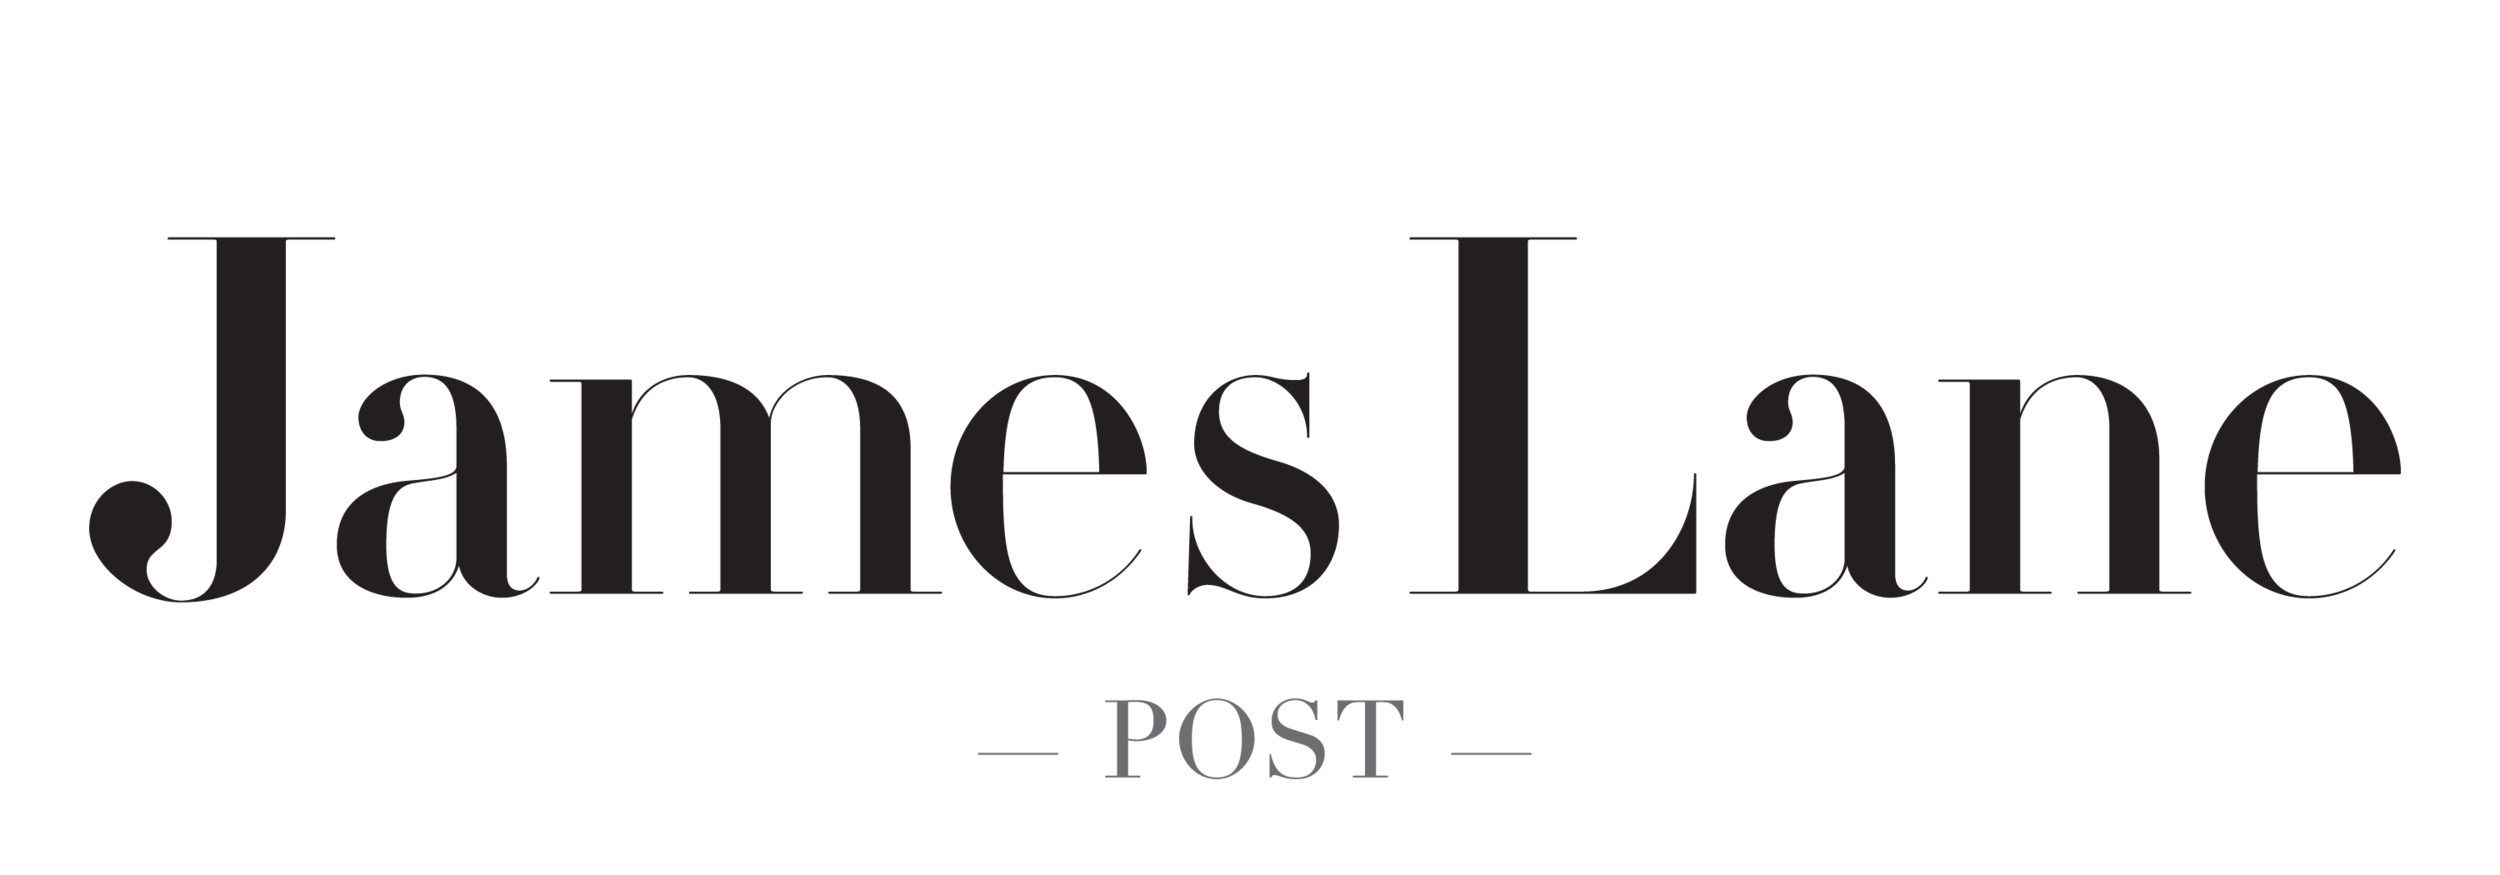 James Lane Post Logoblack.png